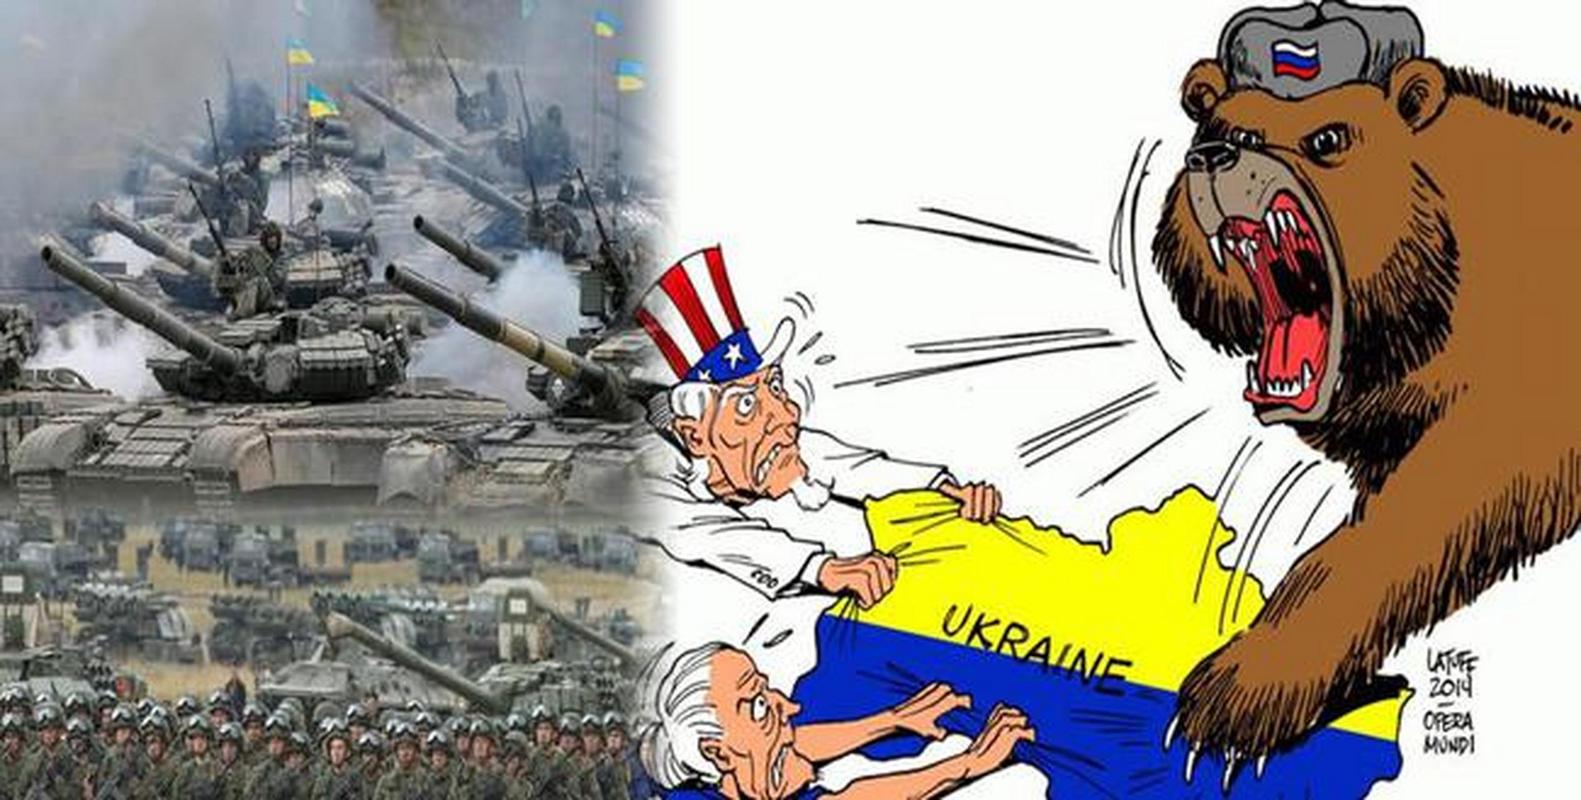 乌克兰战场,俄罗斯打响反美第一步,绝对的一国之